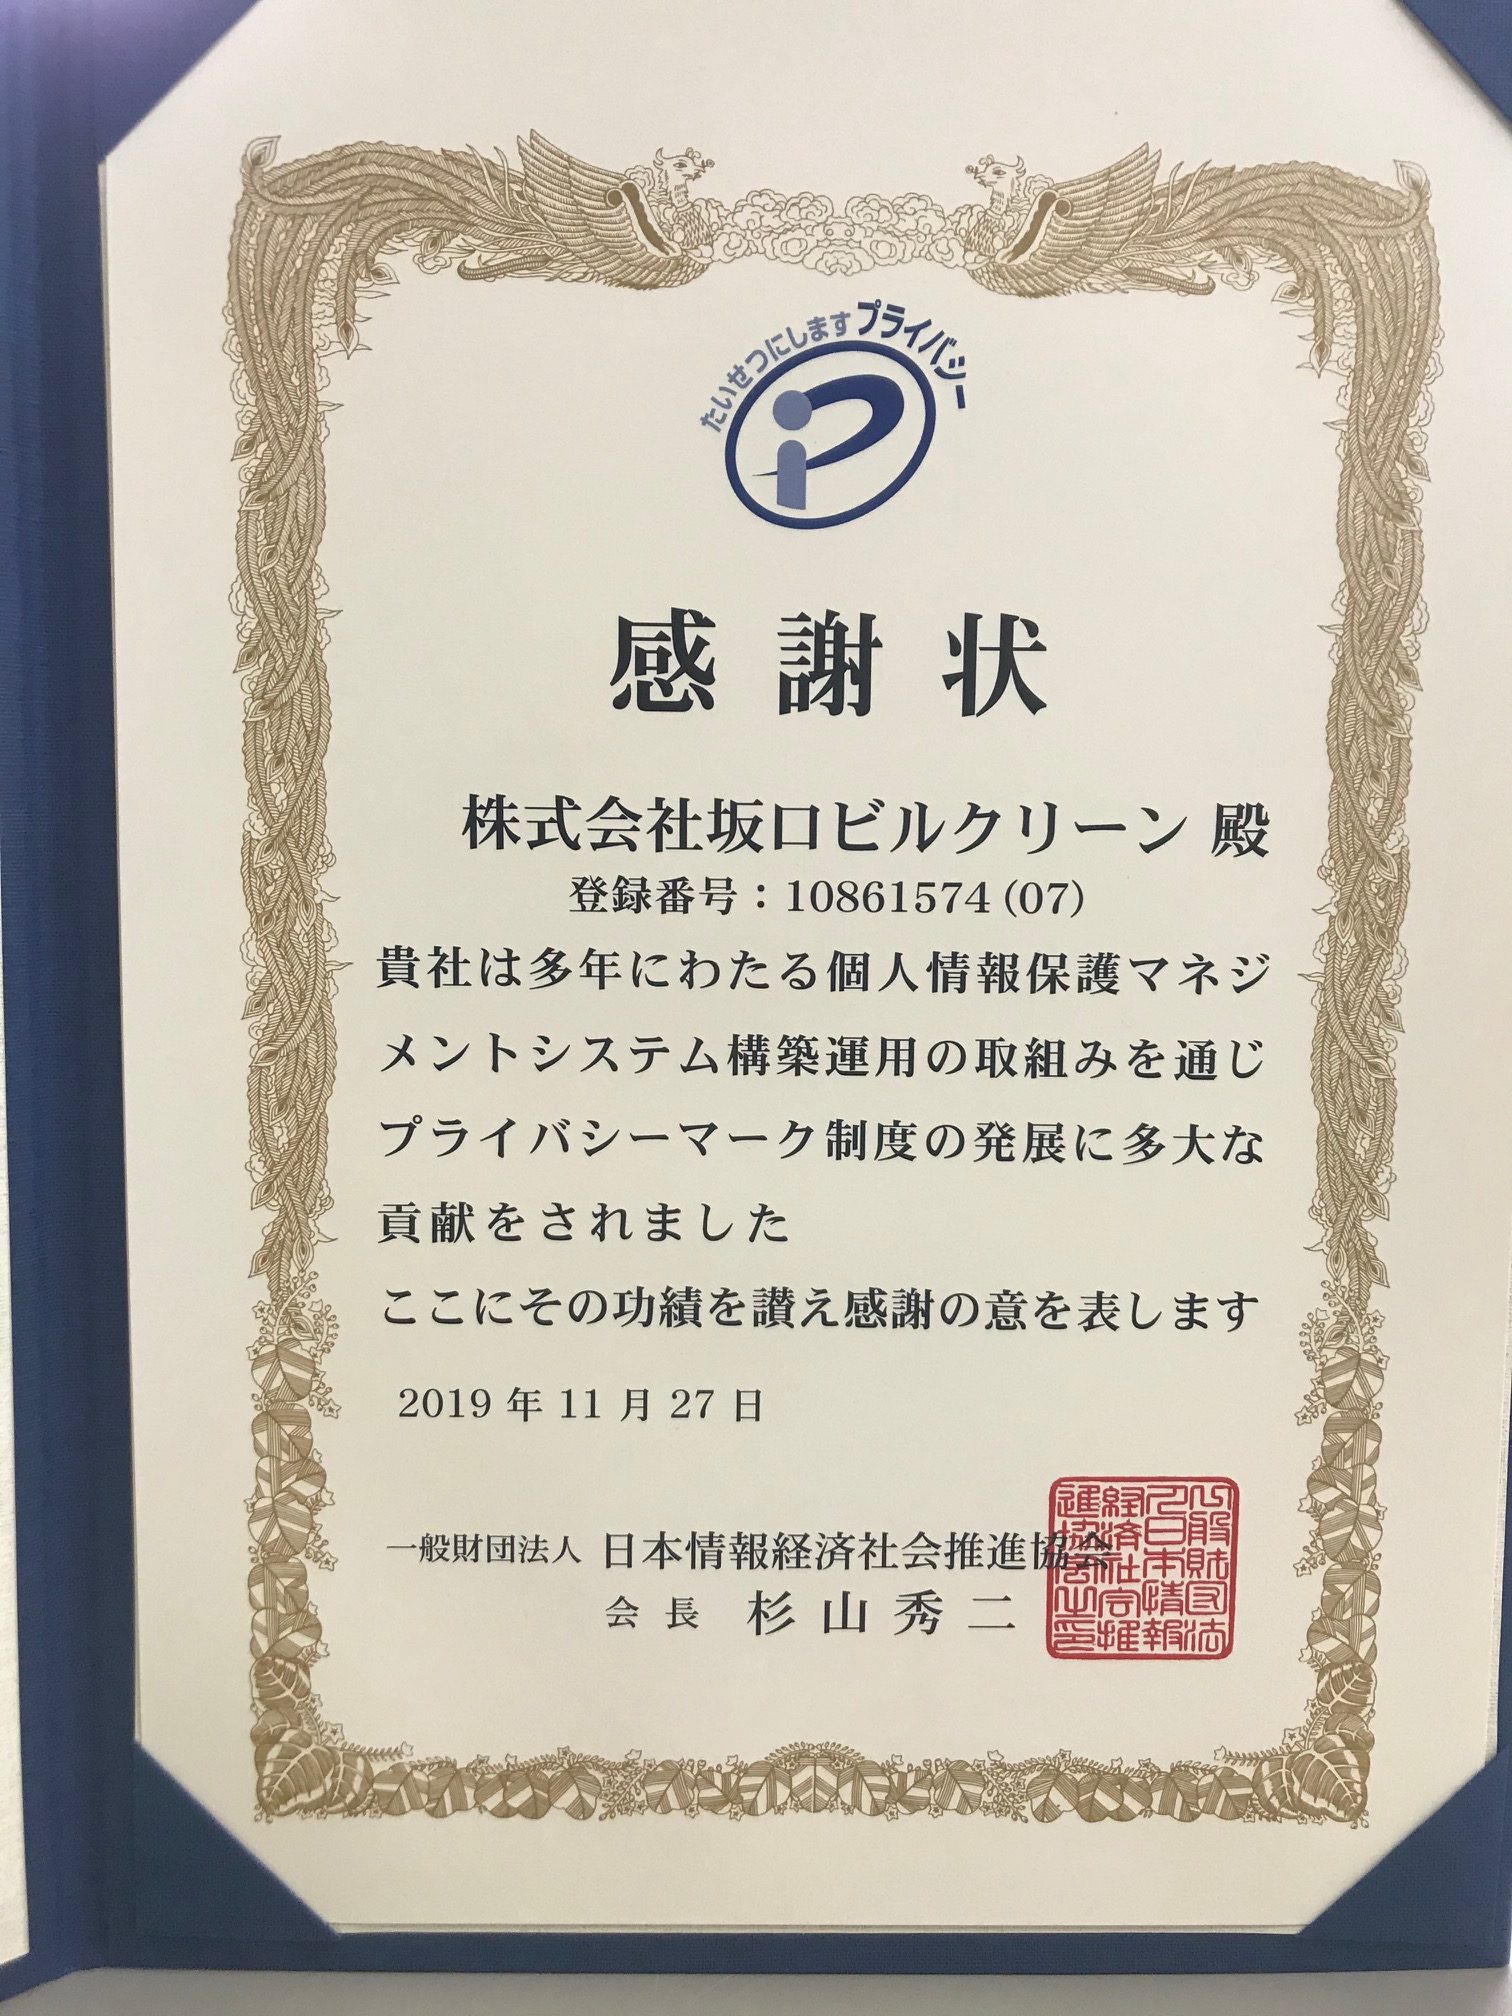 一般財団法人日本情報経済社会推進協会より感謝状をいただきました。